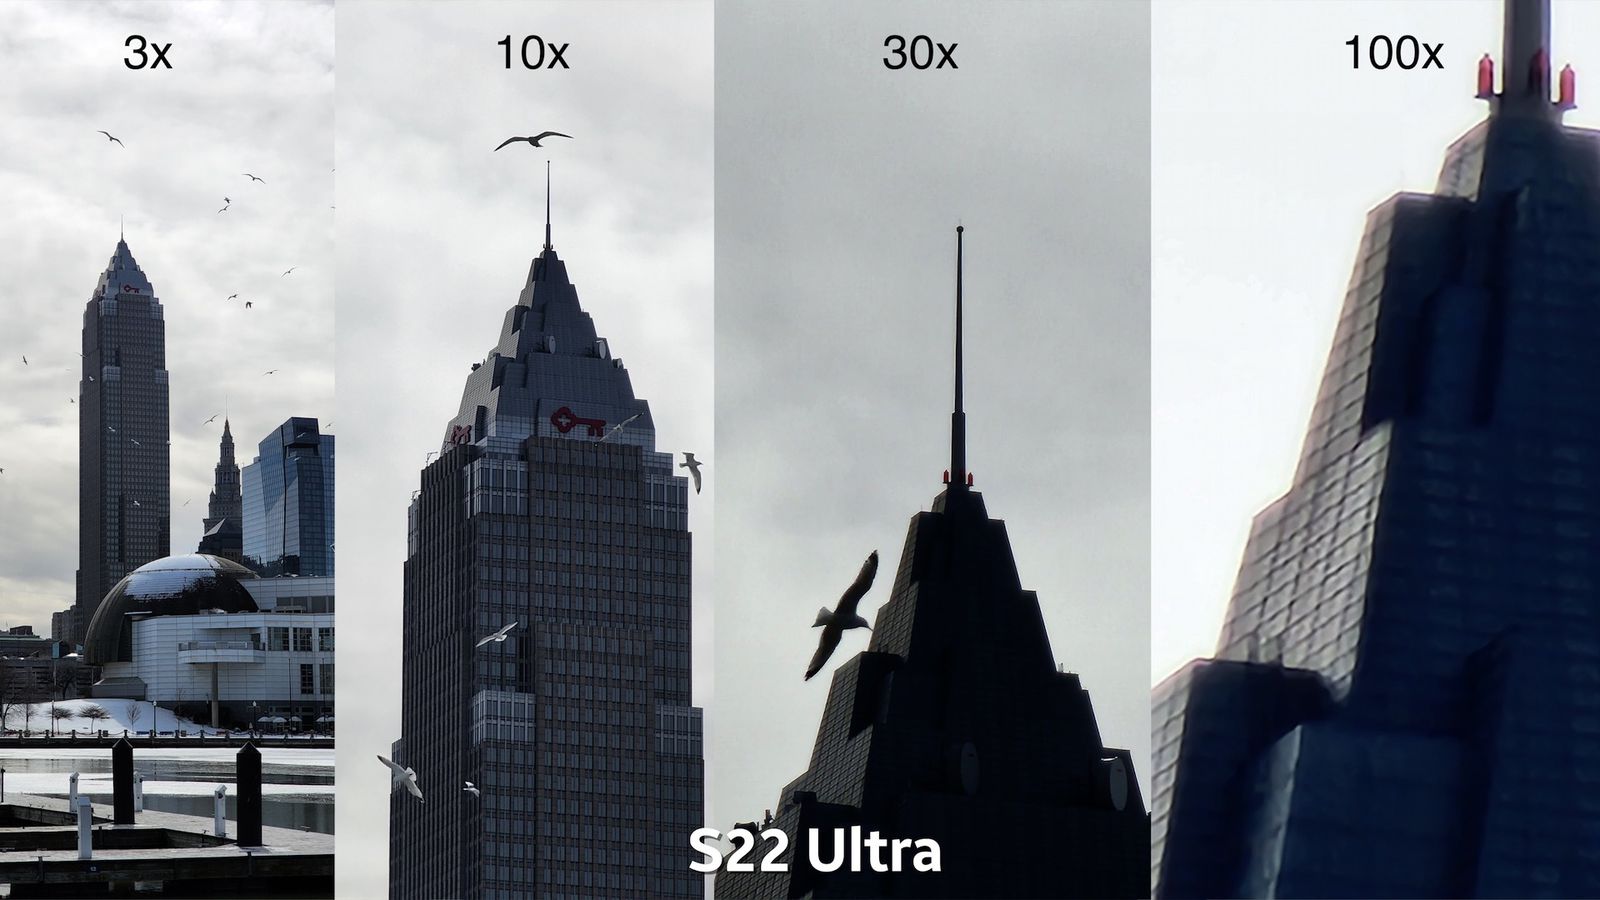 s22-ultra-iphone-13-pro-max-comparison-10